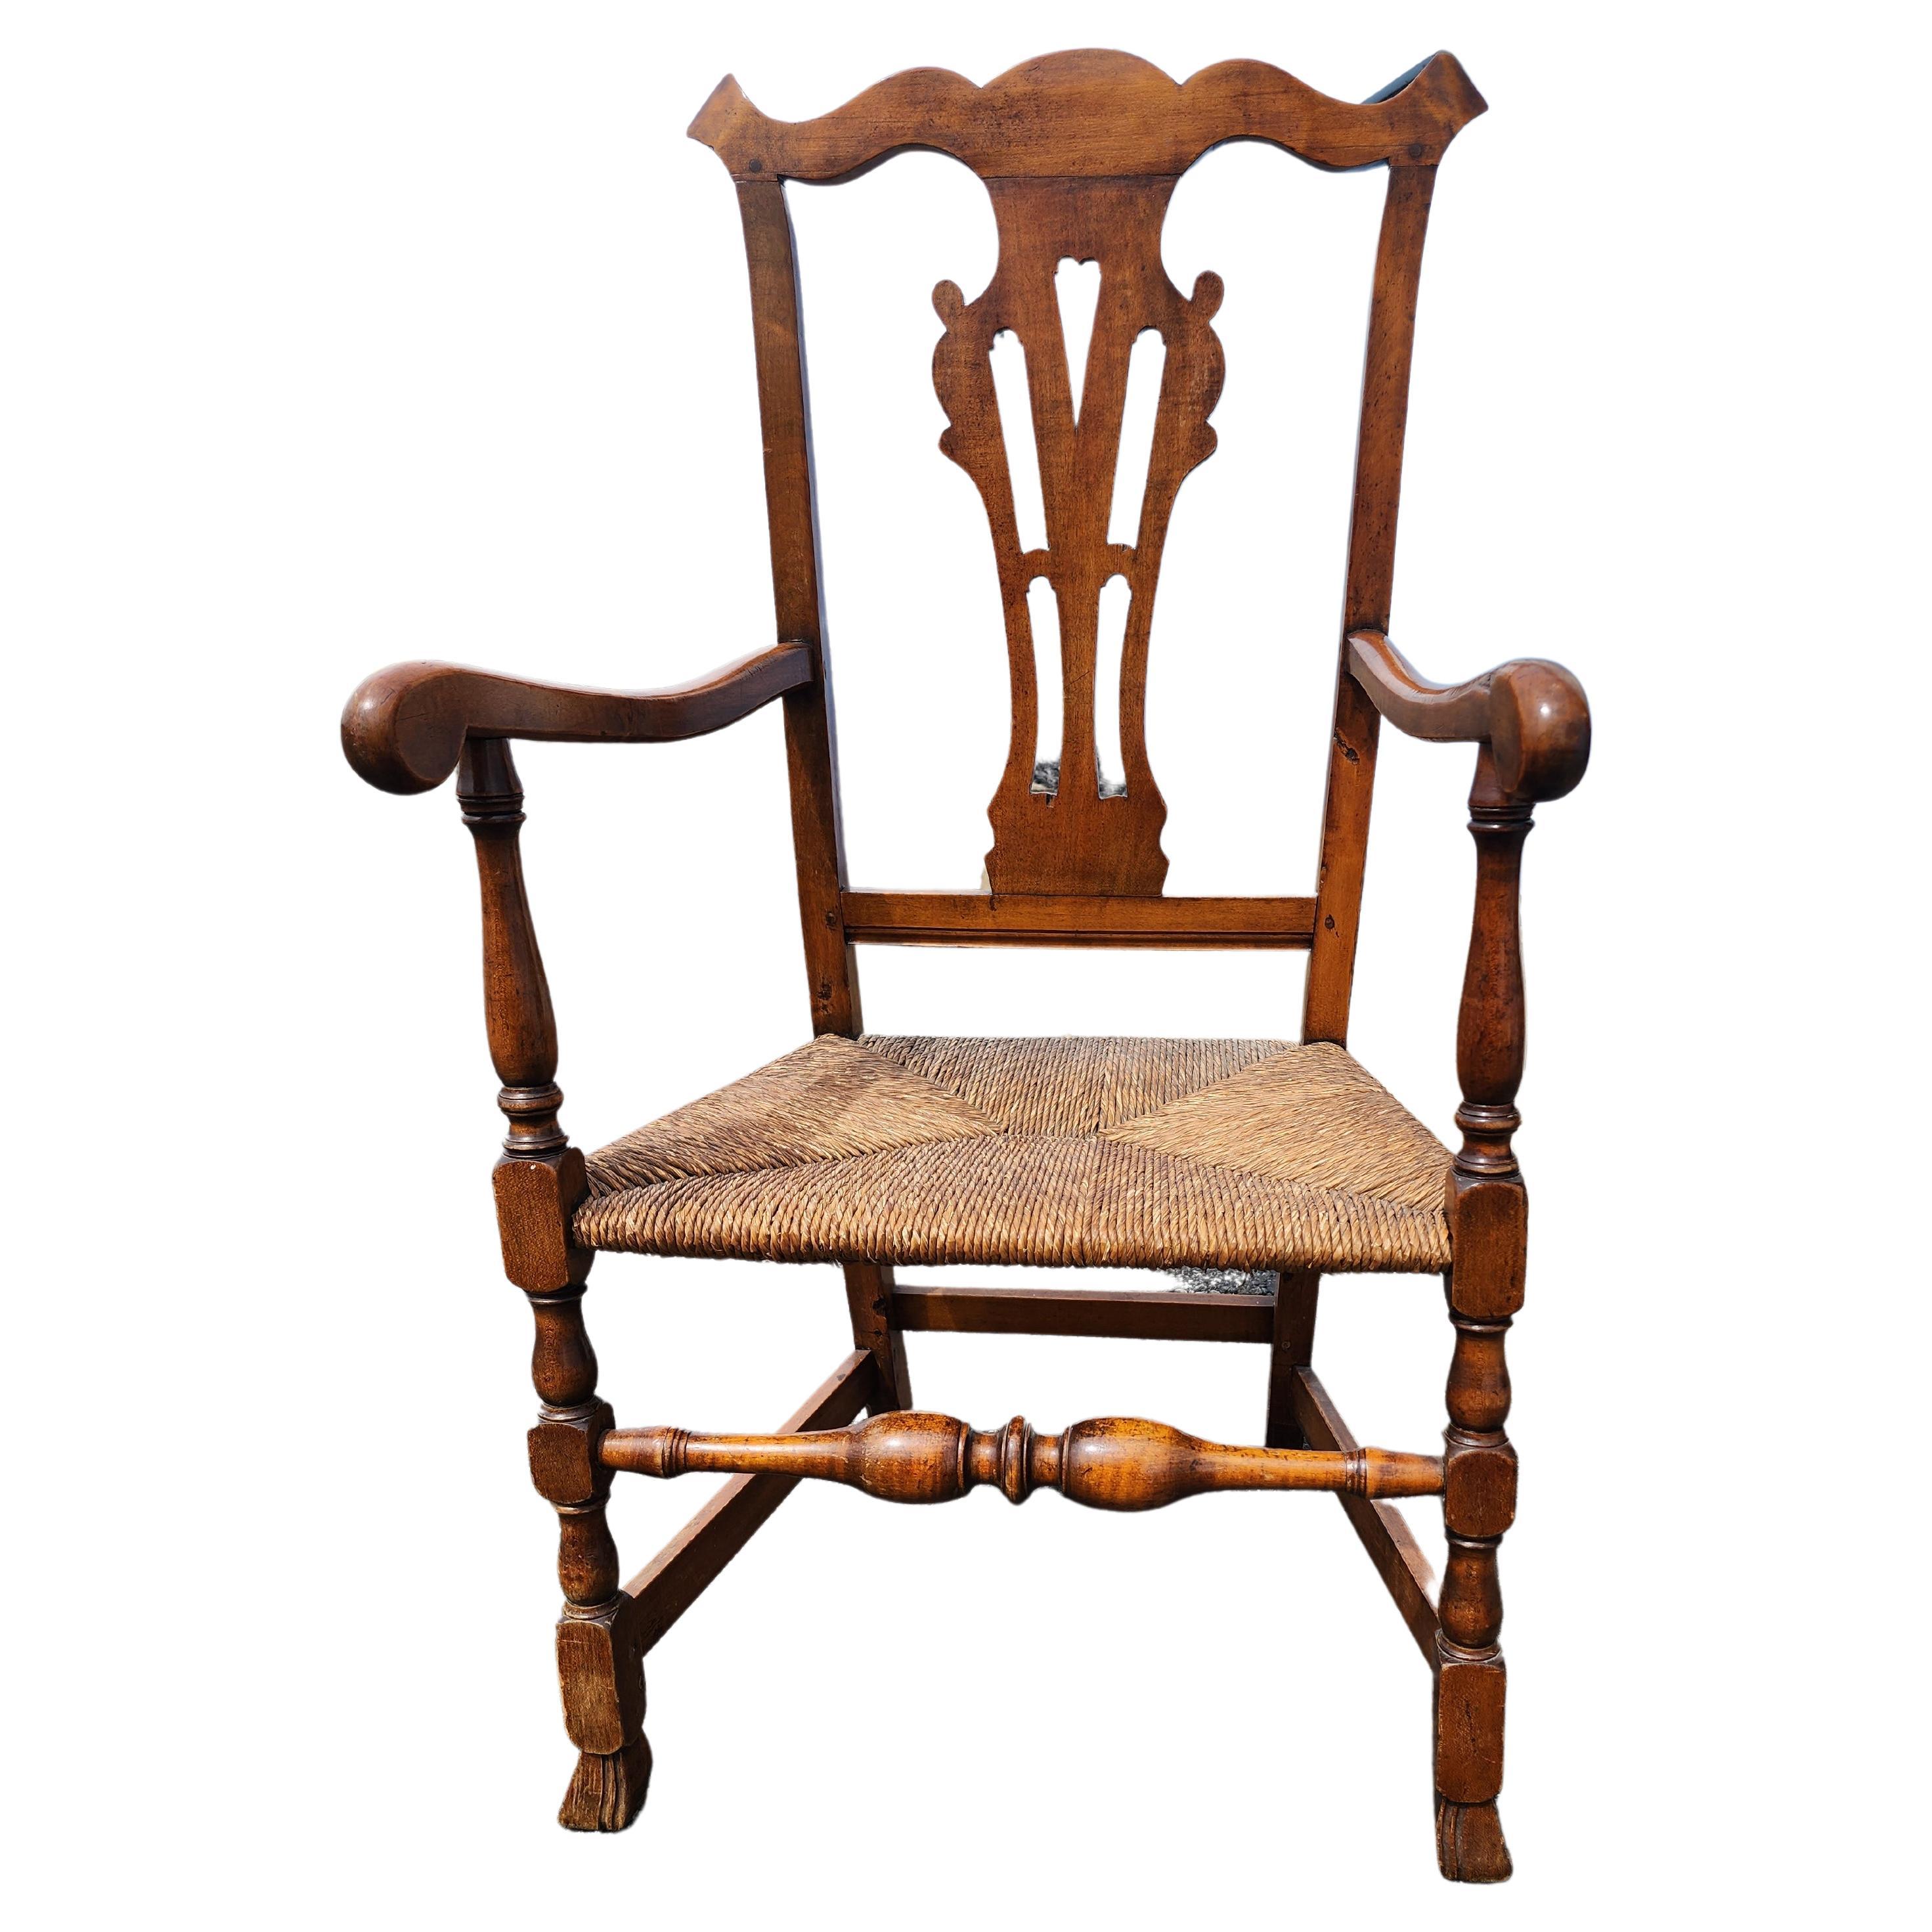 Grande chaise Chippendale à crête en forme d'arc de Cupidon. Cet imposant fauteuil Chippendale est fabriqué en érable et en érable figuré. Le profil du cimier et son motif ajouré suggèrent une origine Rhode Island ou Connecticut, tout comme